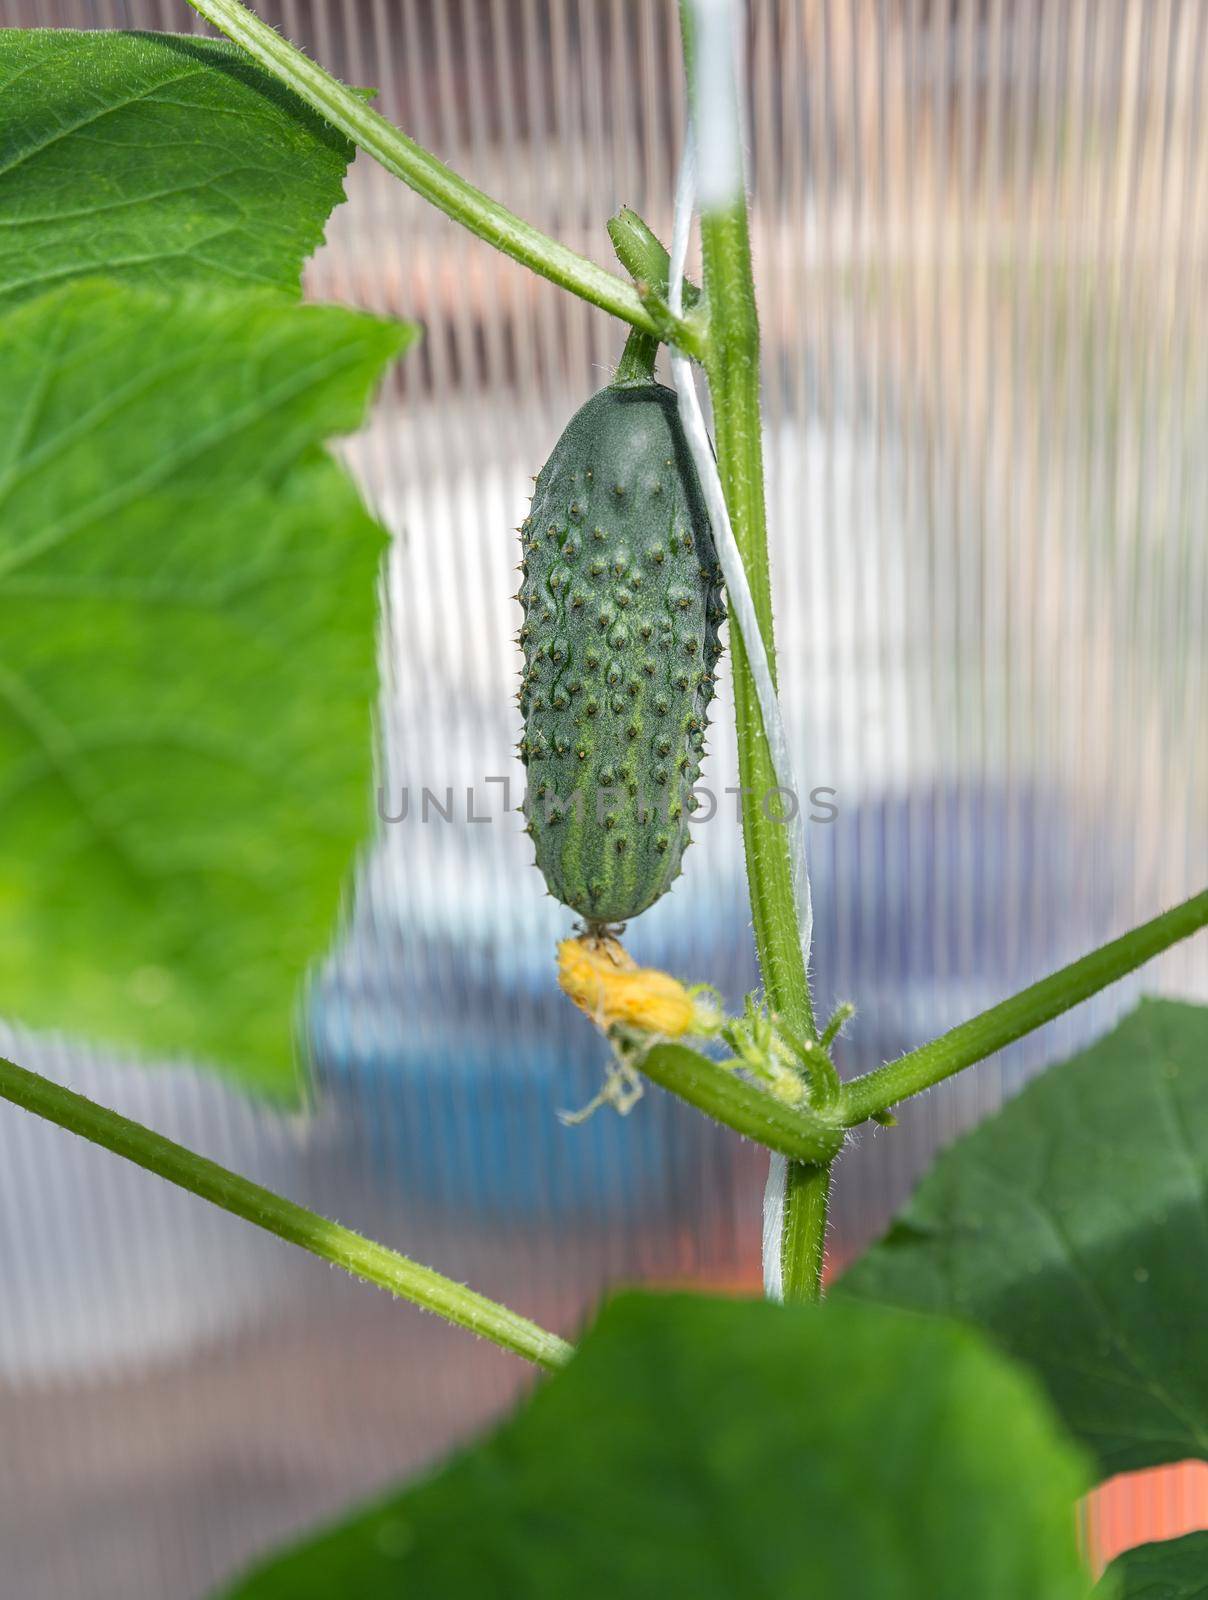 Cucumber in garden by Mariakray